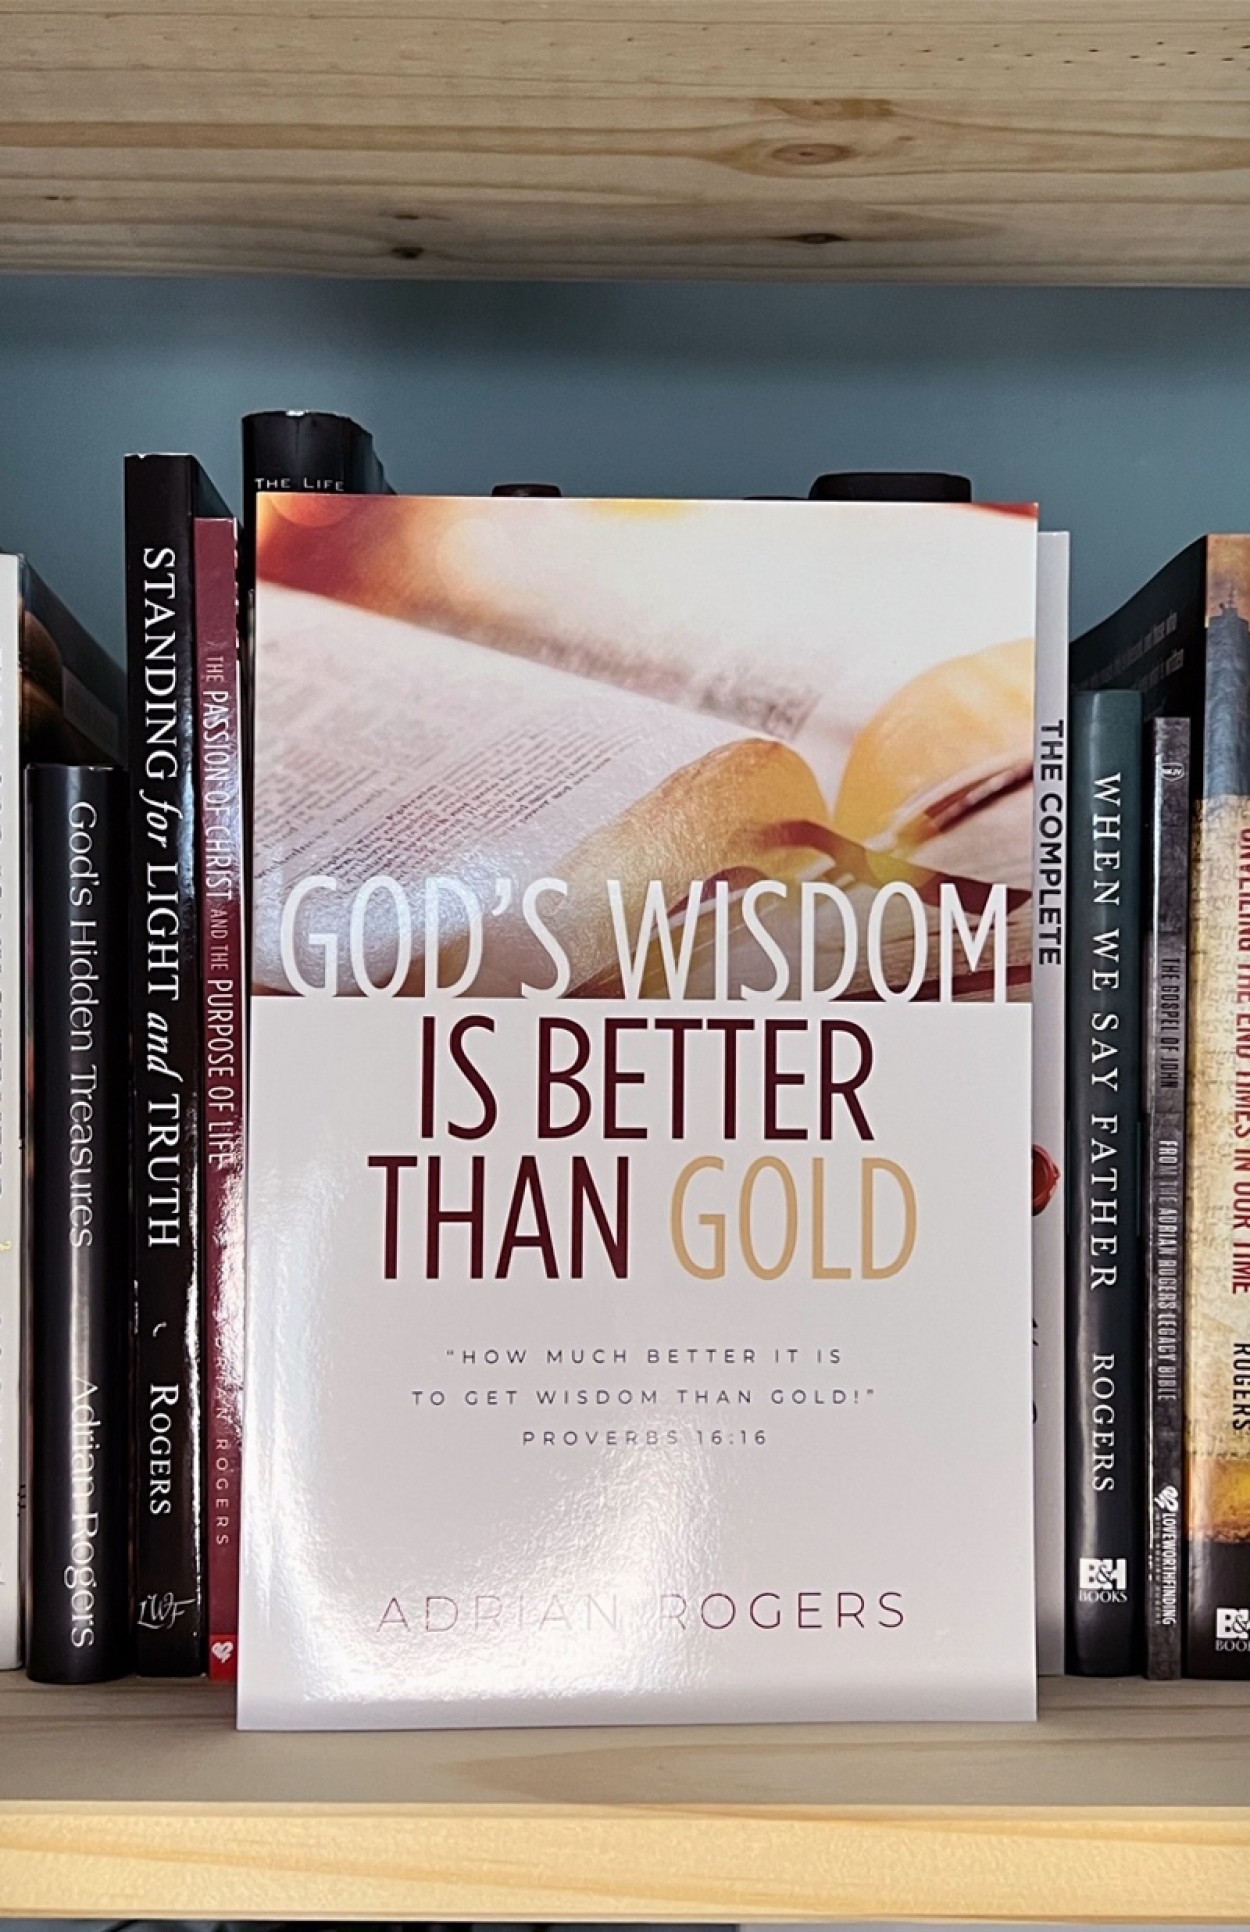 B101 gods wisdom is better than gold book BOOKSHELF